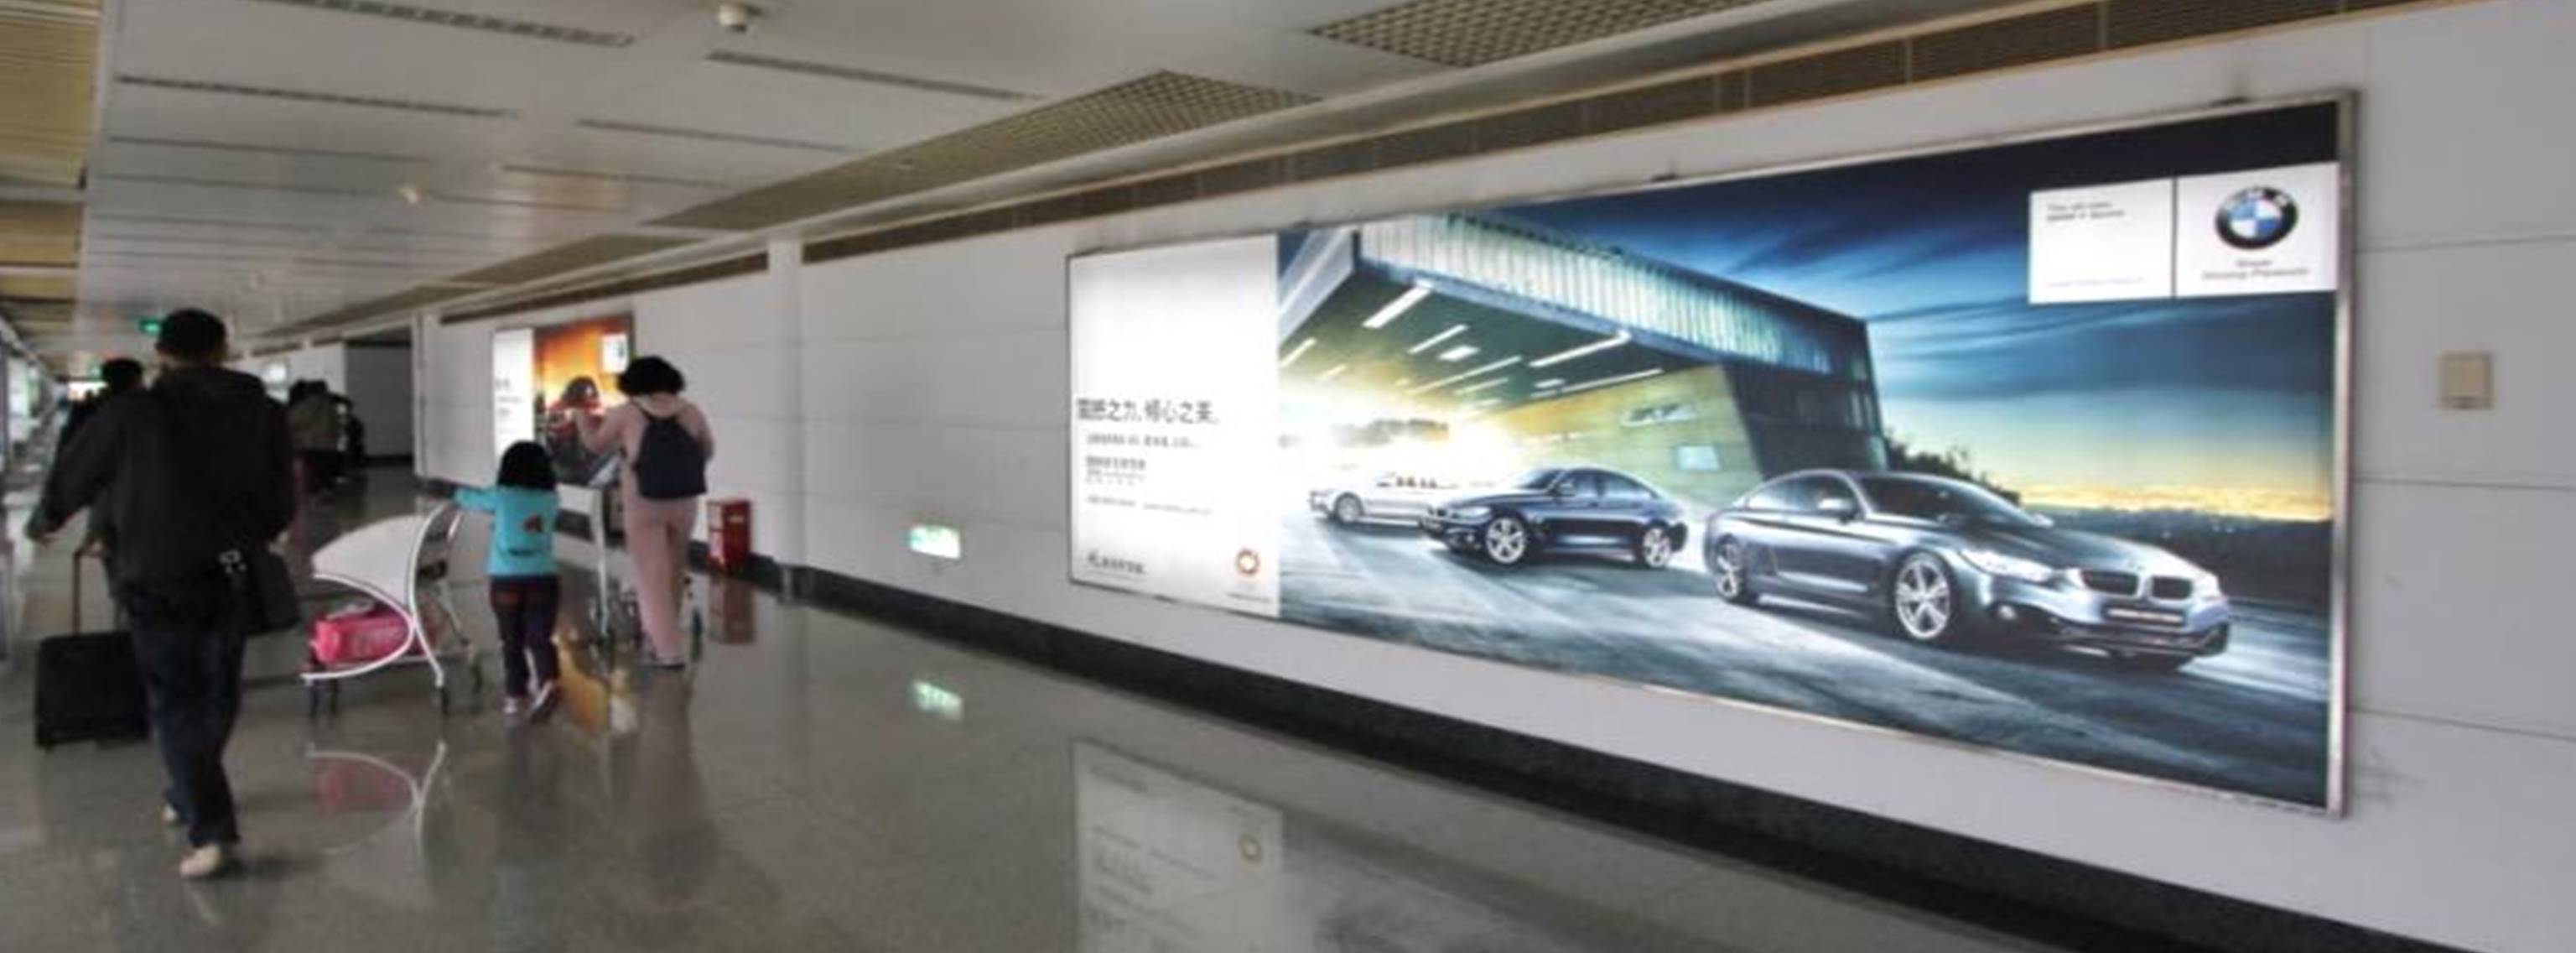 杭州萧山机场广告-T1到达夹层长廊灯箱DA19